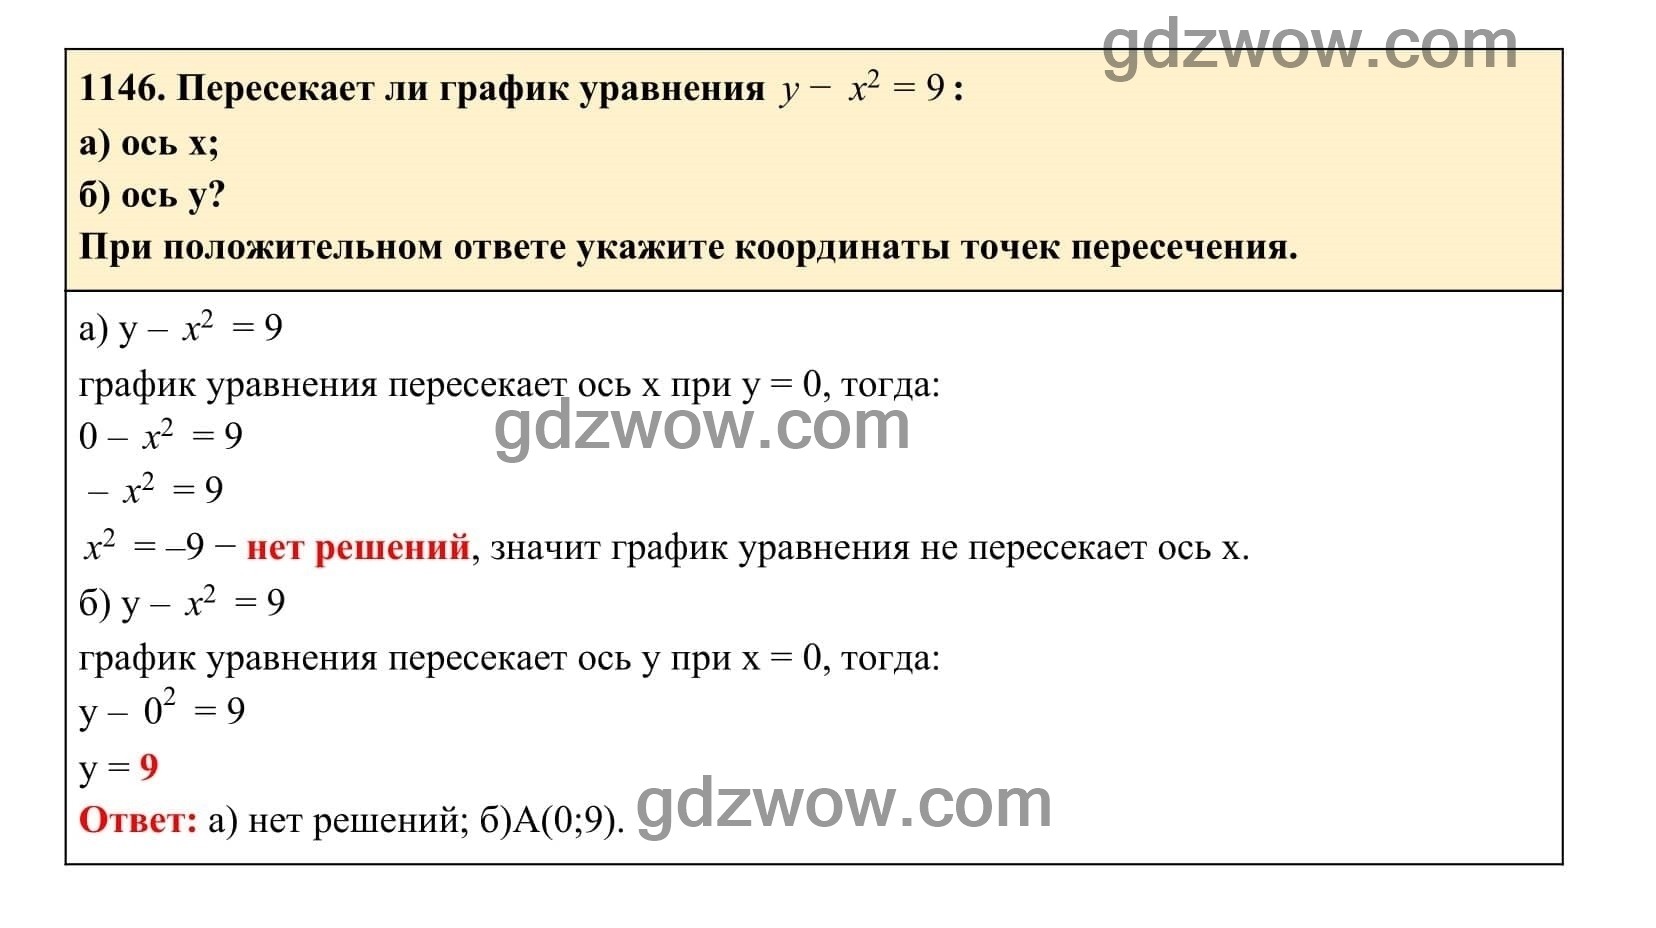 Упражнение 1146 - ГДЗ по Алгебре 7 класс Учебник Макарычев (решебник) - GDZwow